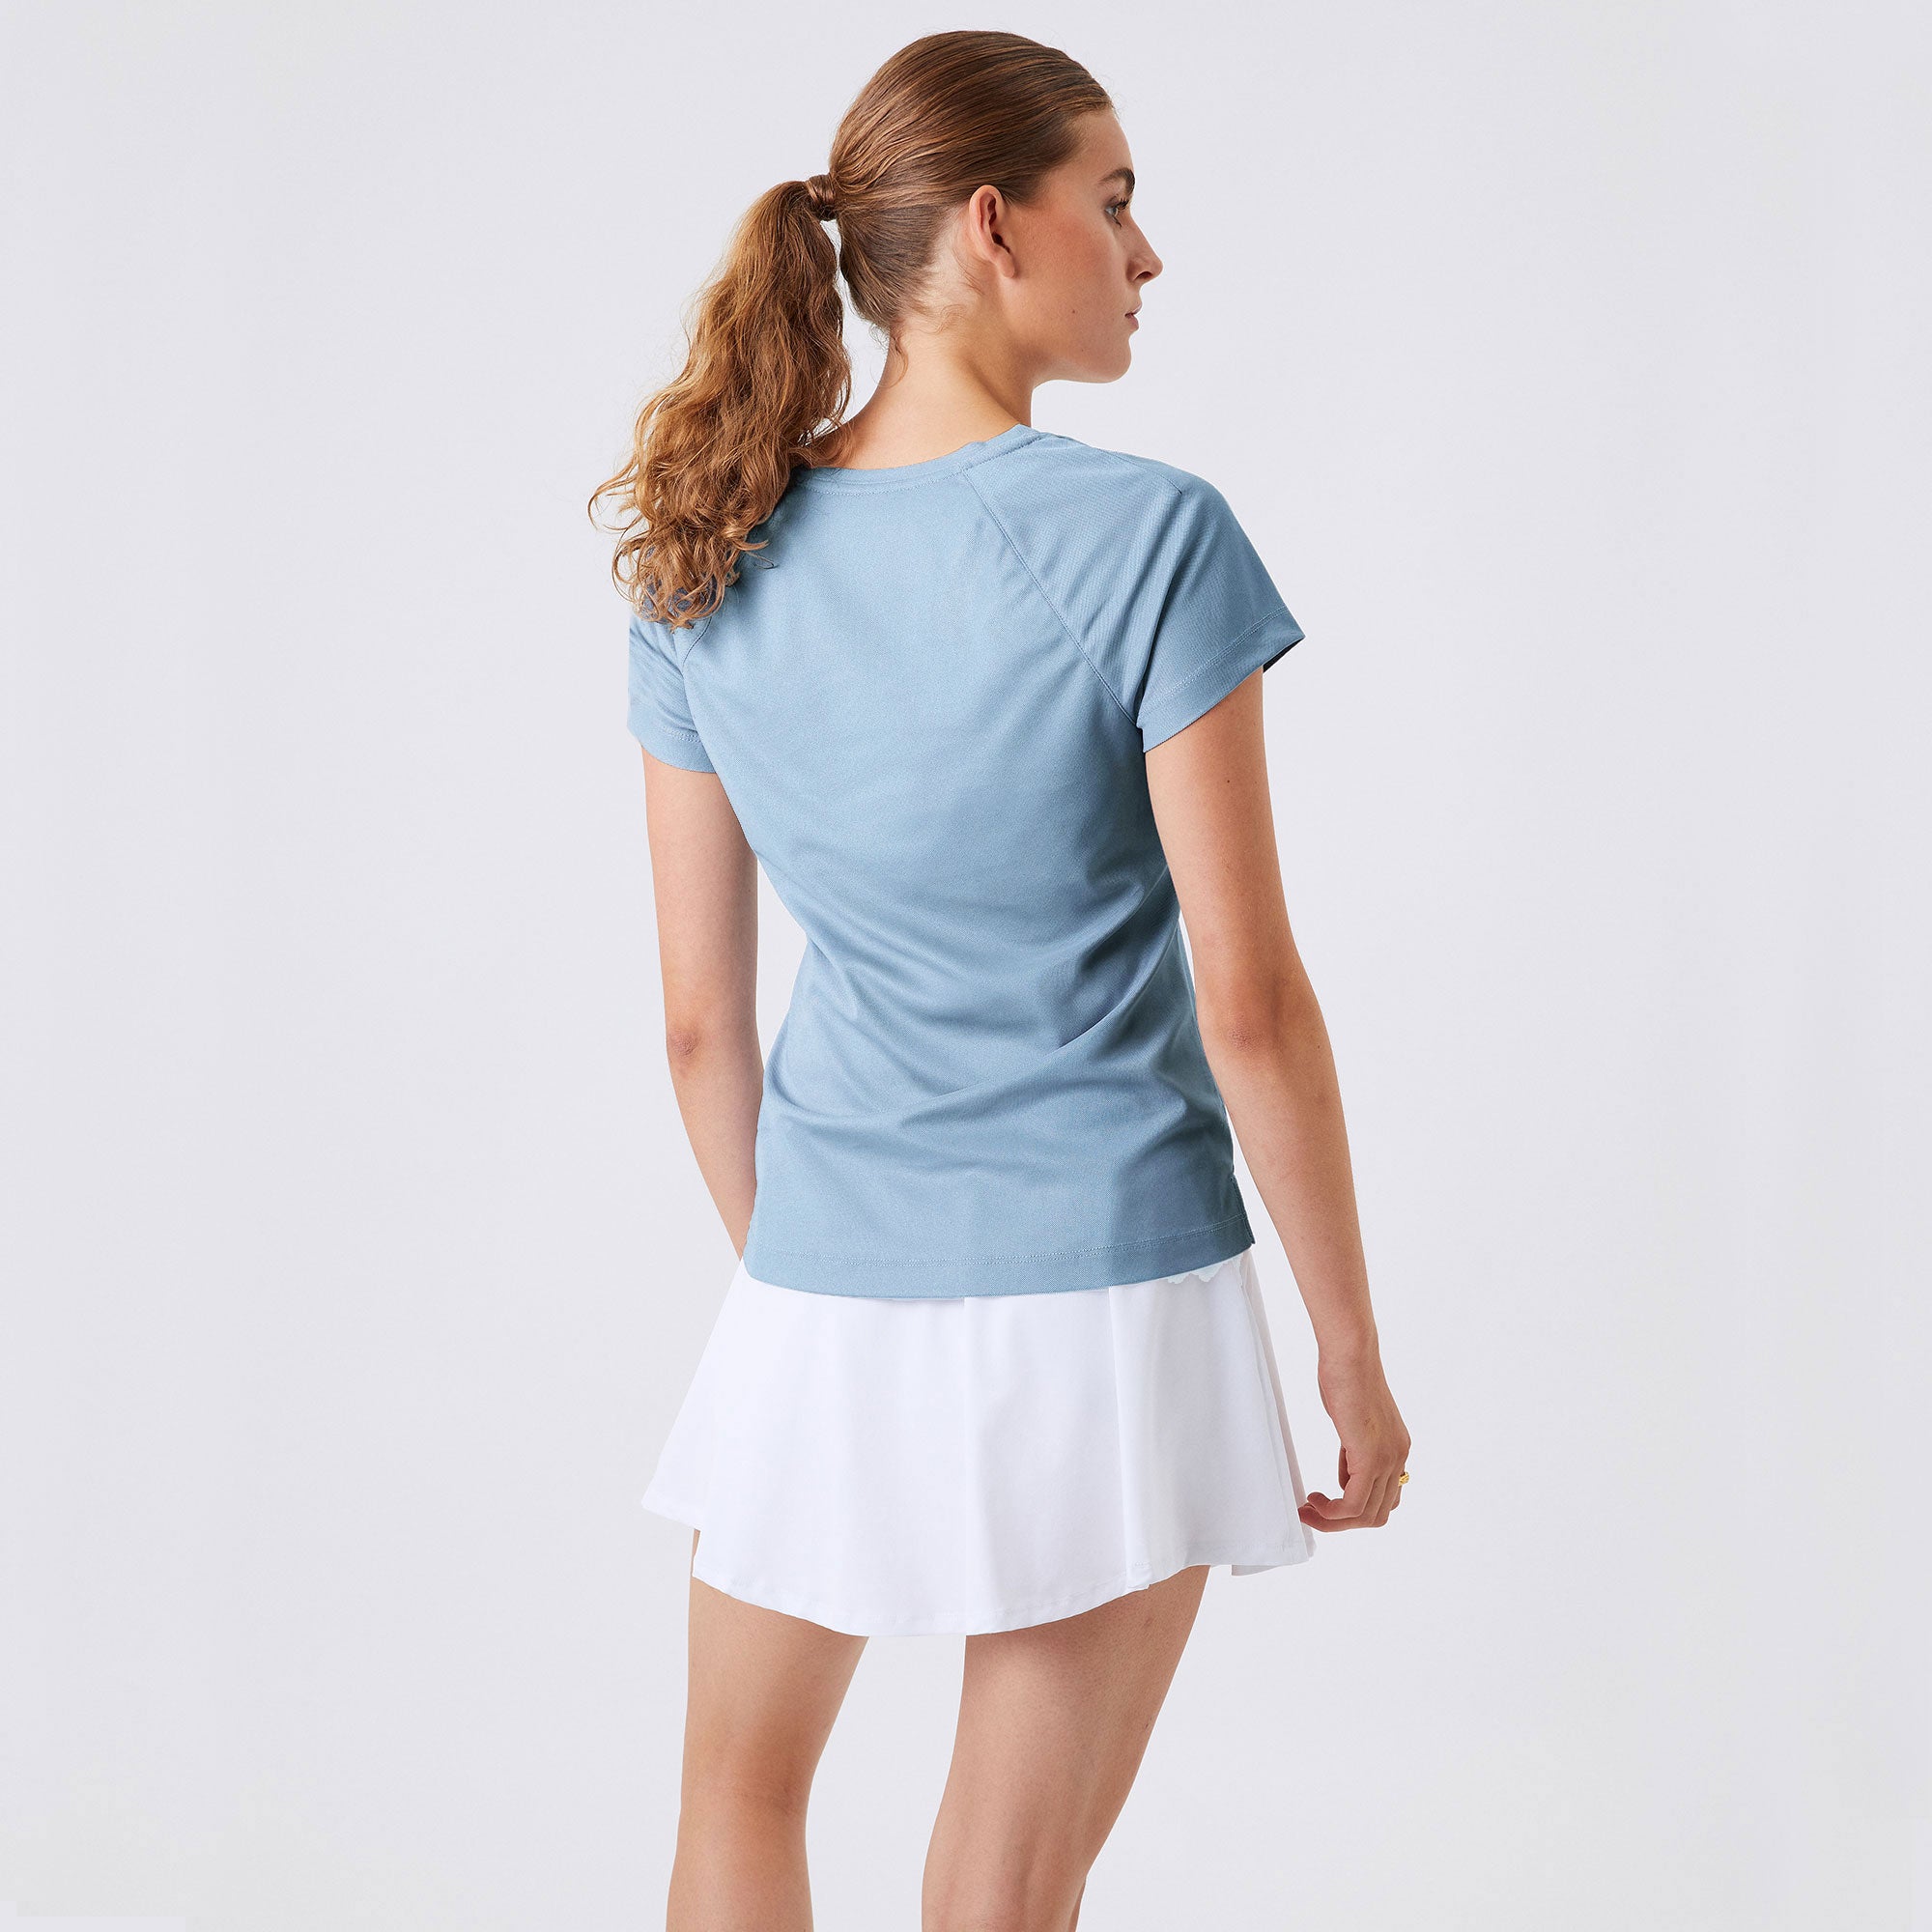 Björn Borg Ace Women's Tennis Shirt Blue (2)